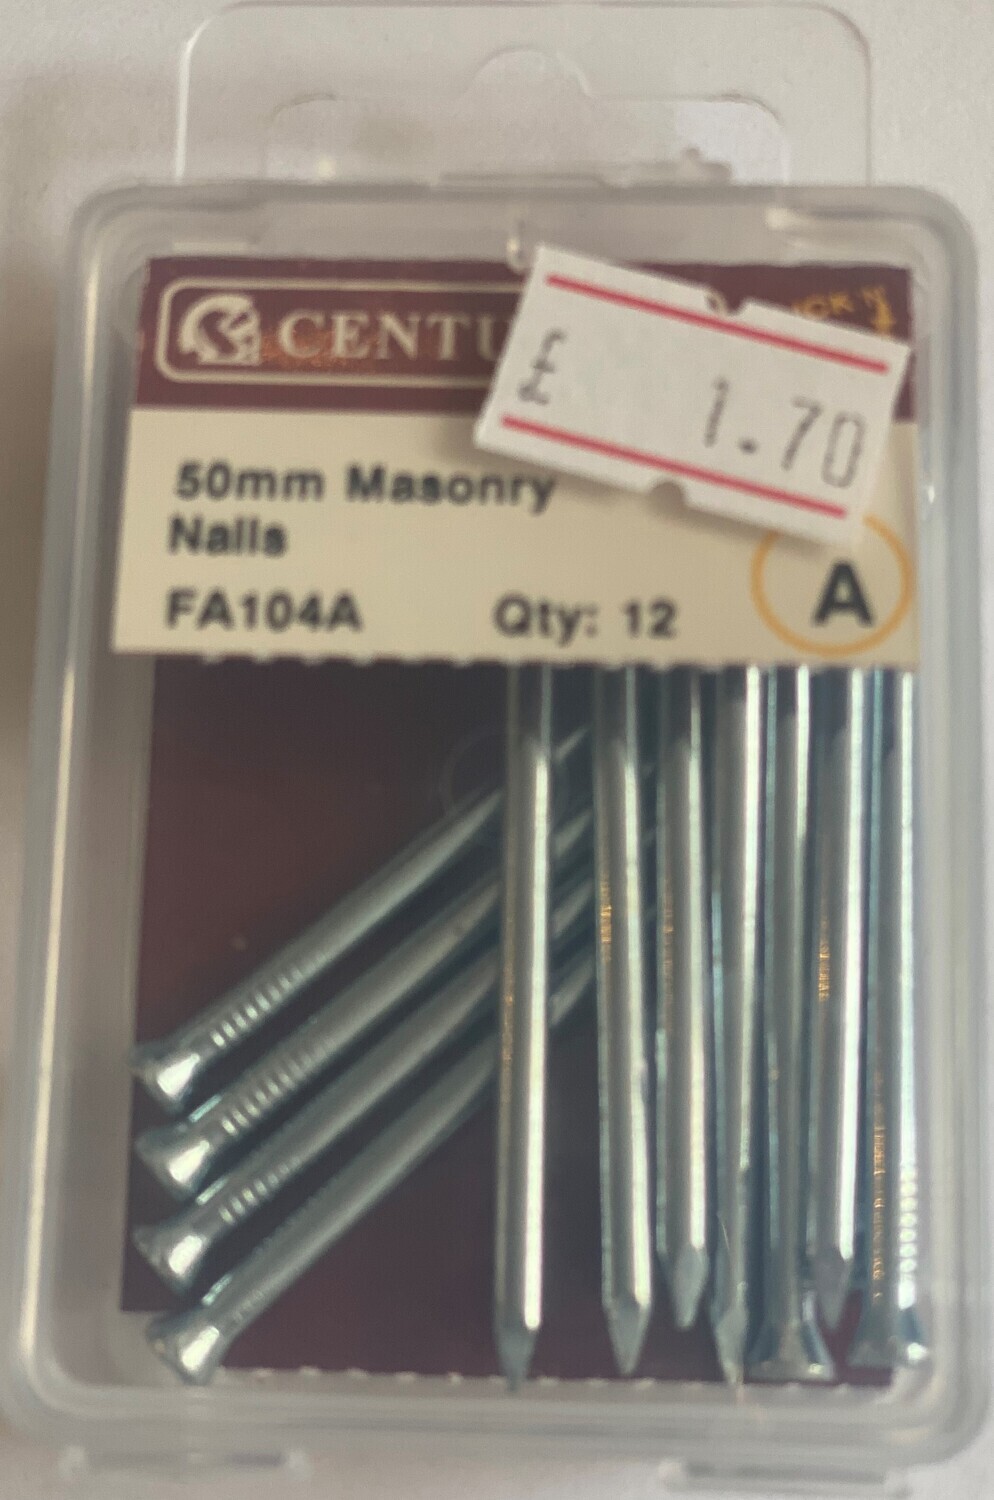 50mm Masonry Nails (Pack of 12)